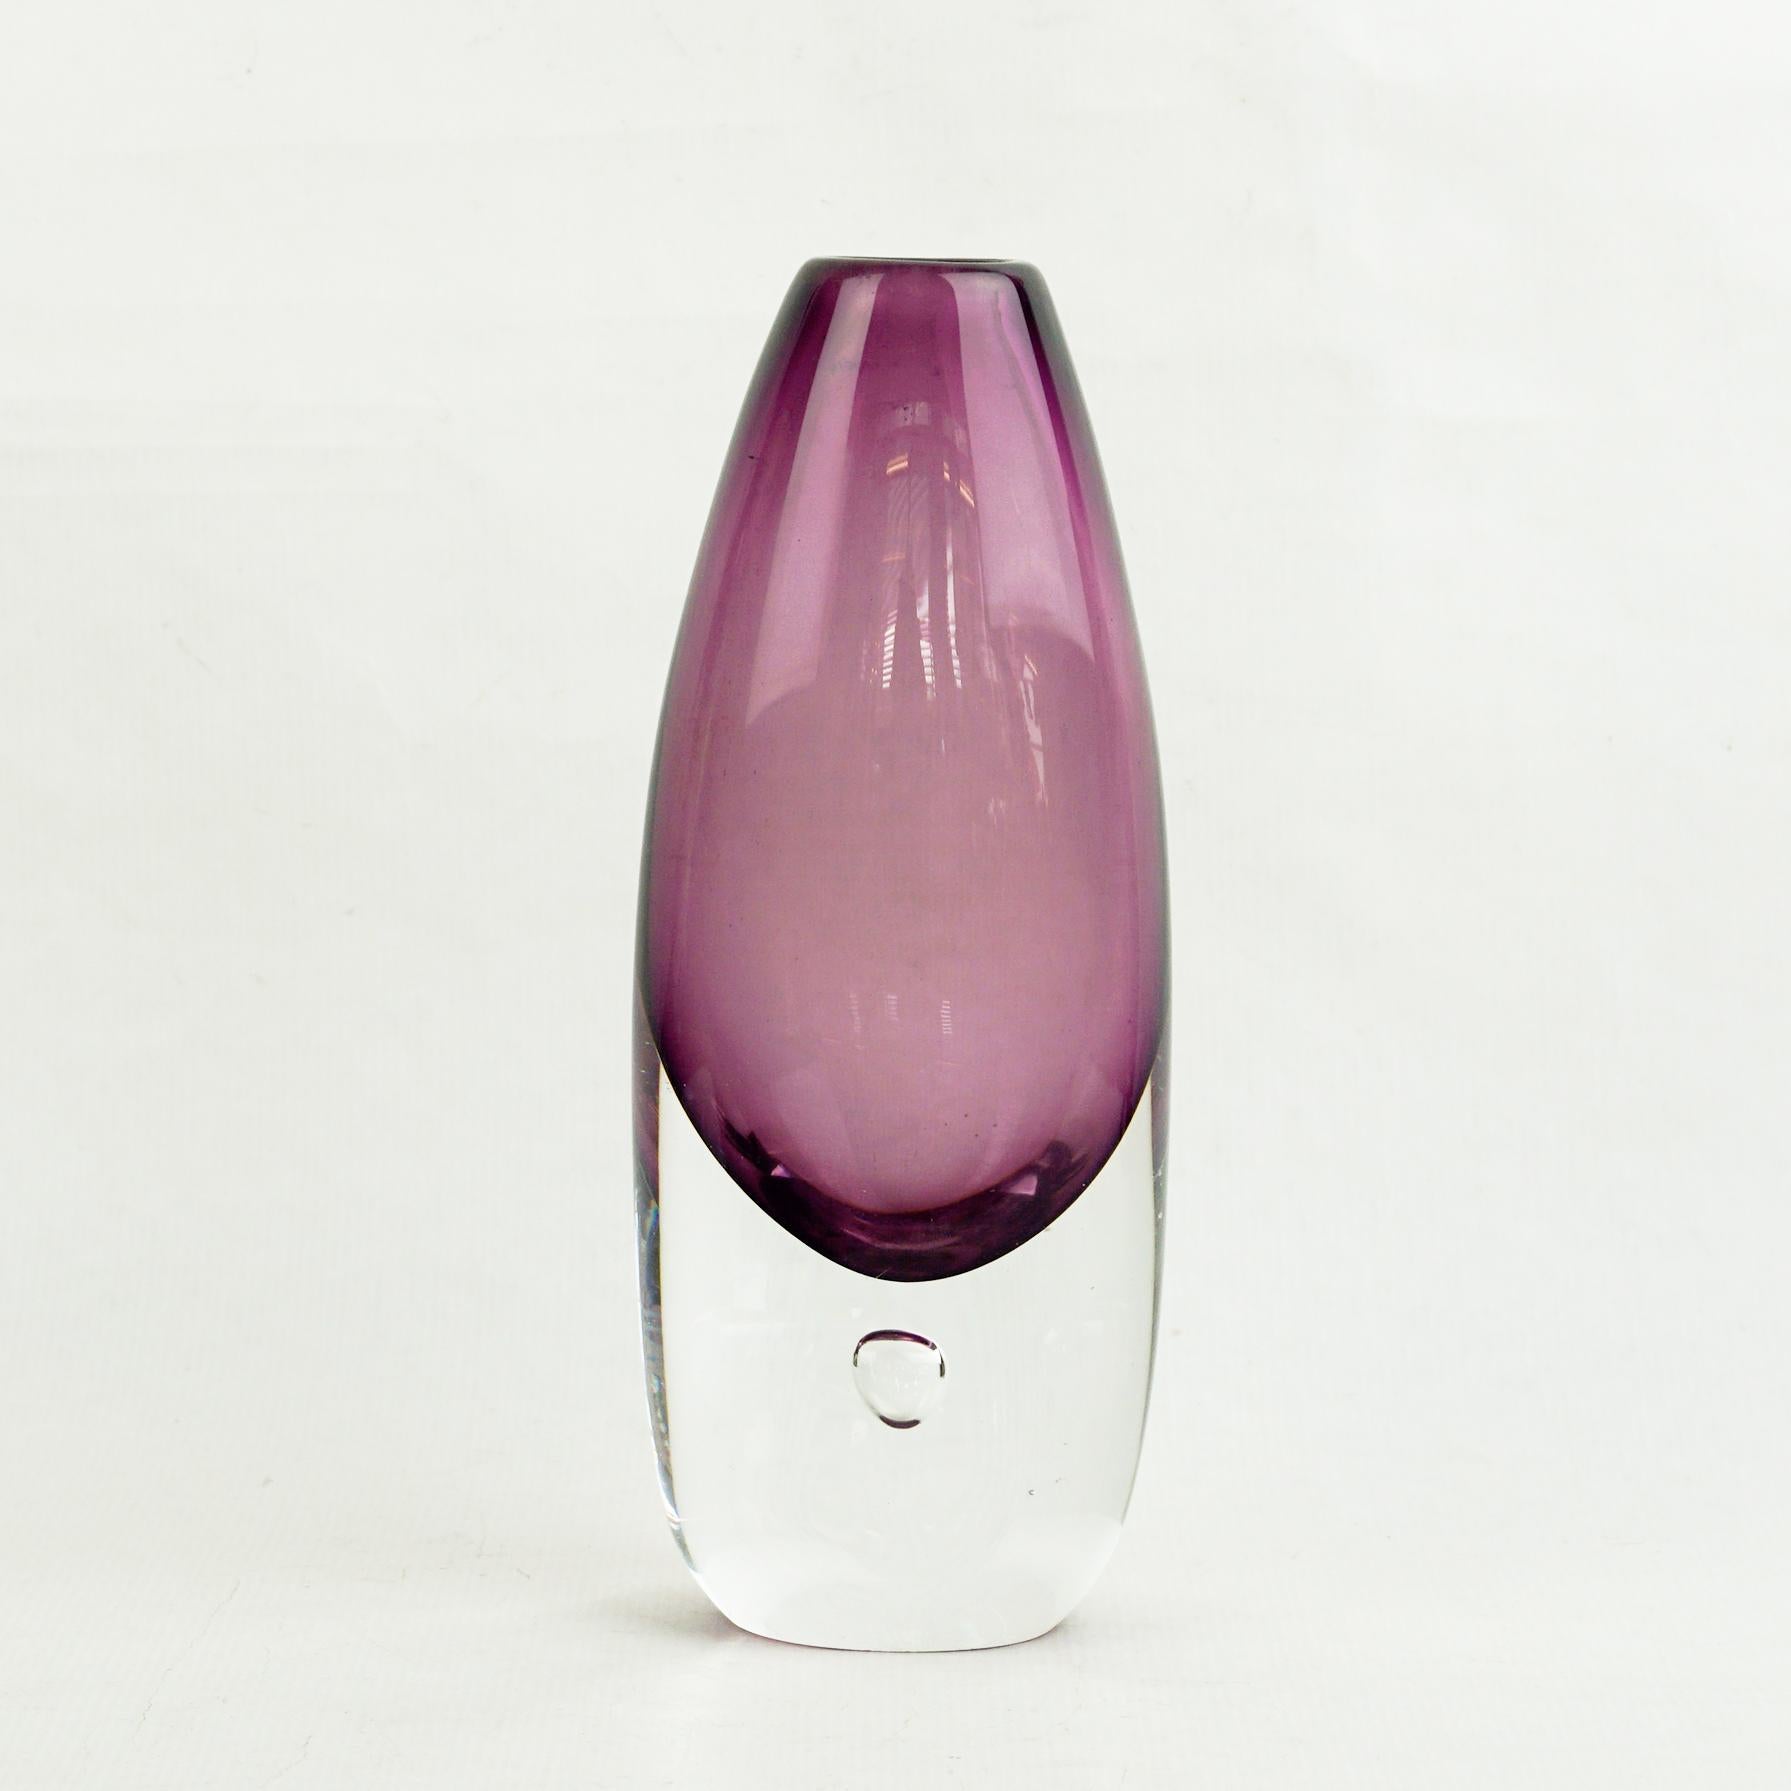 Cette étonnante améthyste violette  Le vase sommerso a été conçu par Ernest Gordon pour A.I.C., Suède, c.C. 1960. Il se compose de verre violet et transparent, réalisé selon la technique du sommer, avec une bulle contrôlée à la base. 
Signature